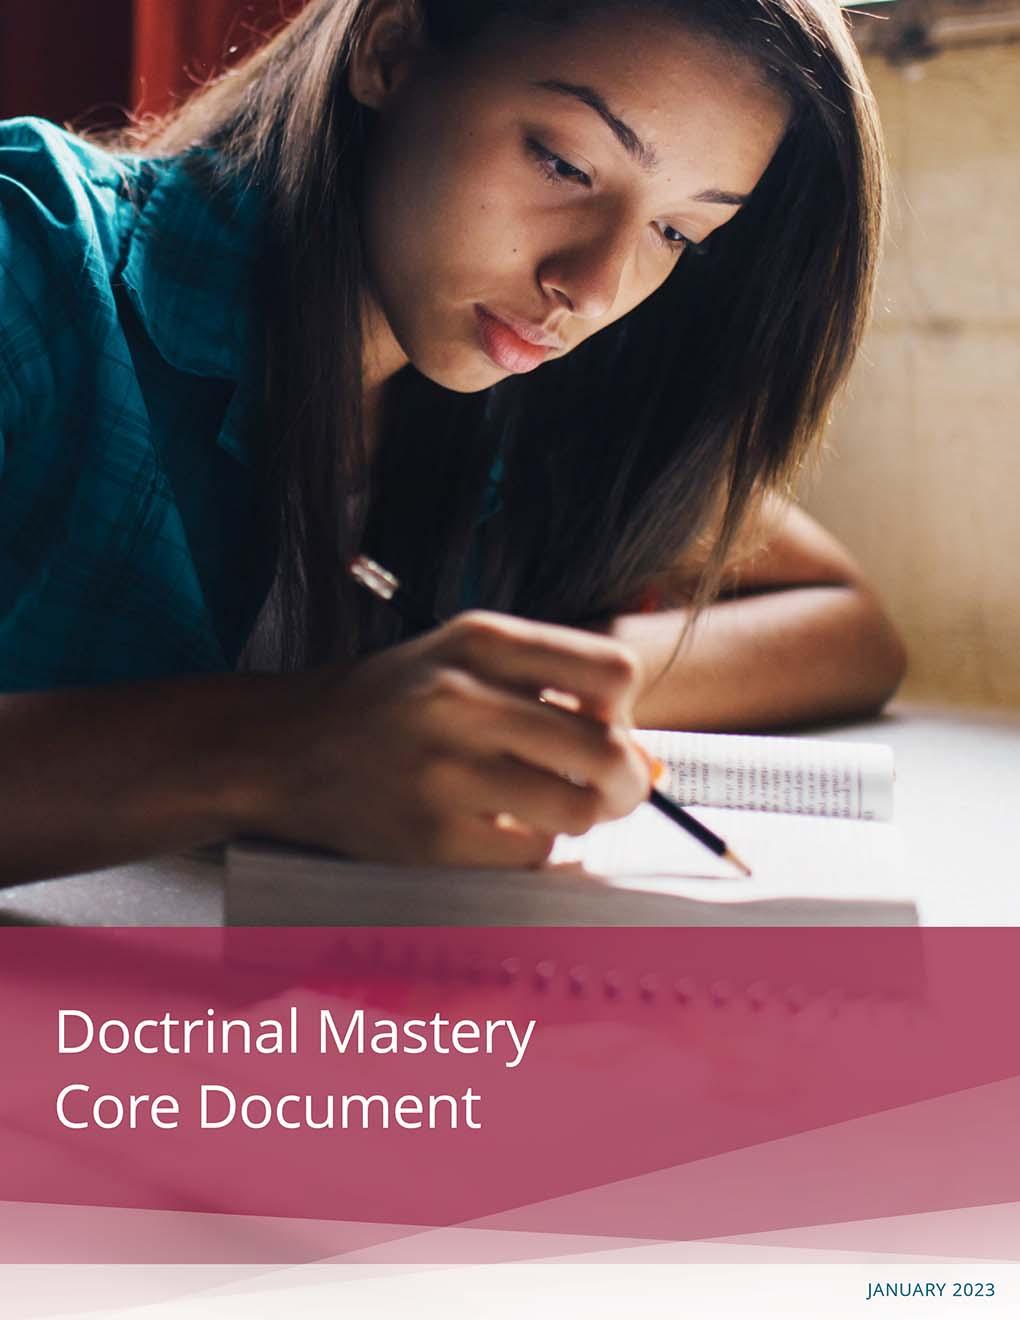 Обложка издания «Углубленное изучение доктрины. Основной документ»